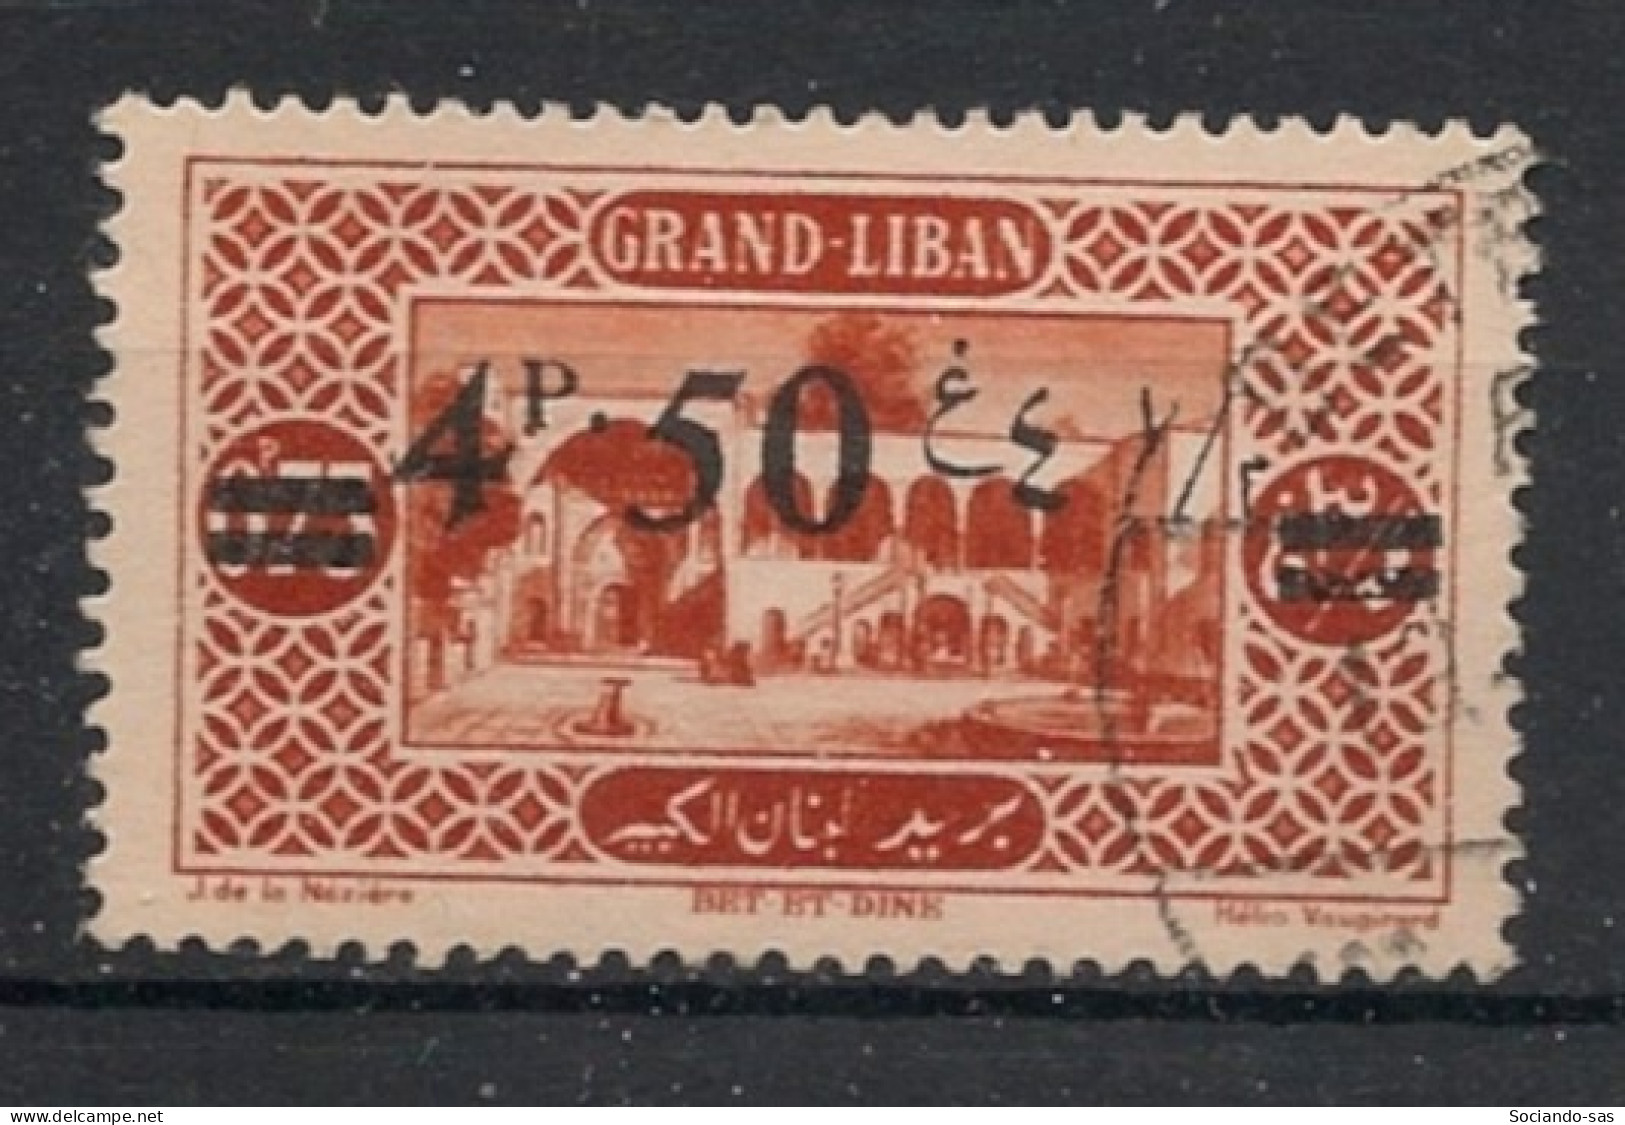 GRAND LIBAN - 1926 - N°YT. 77 - 4pi50 Sur 0pi75 Brun-orange - Oblitéré / Used - Used Stamps